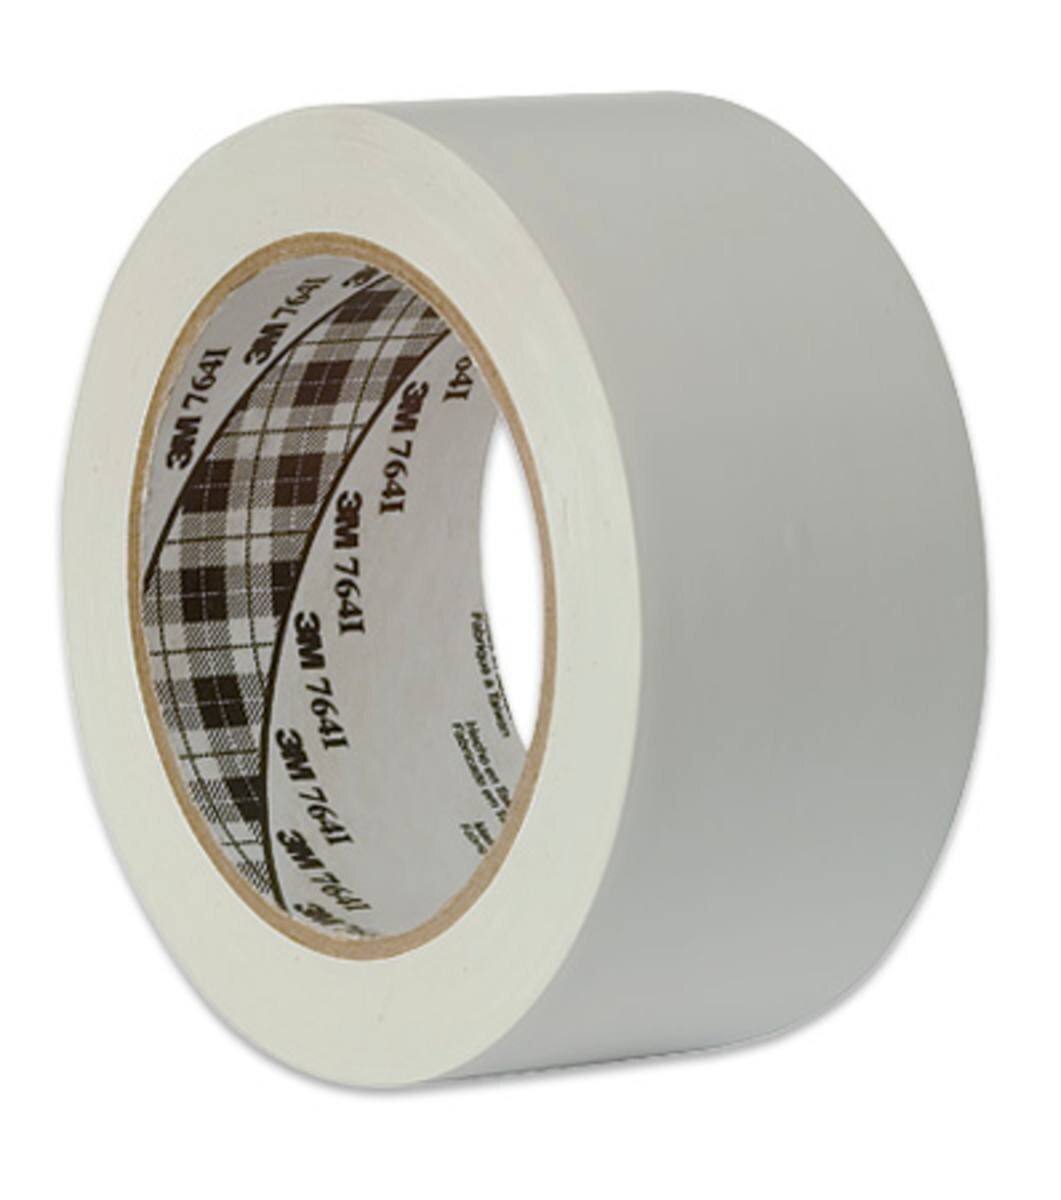 Cinta adhesiva multiuso de PVC 764 de 3M, blanca, 50 mm x 33 m, embalada individualmente en un práctico embalaje